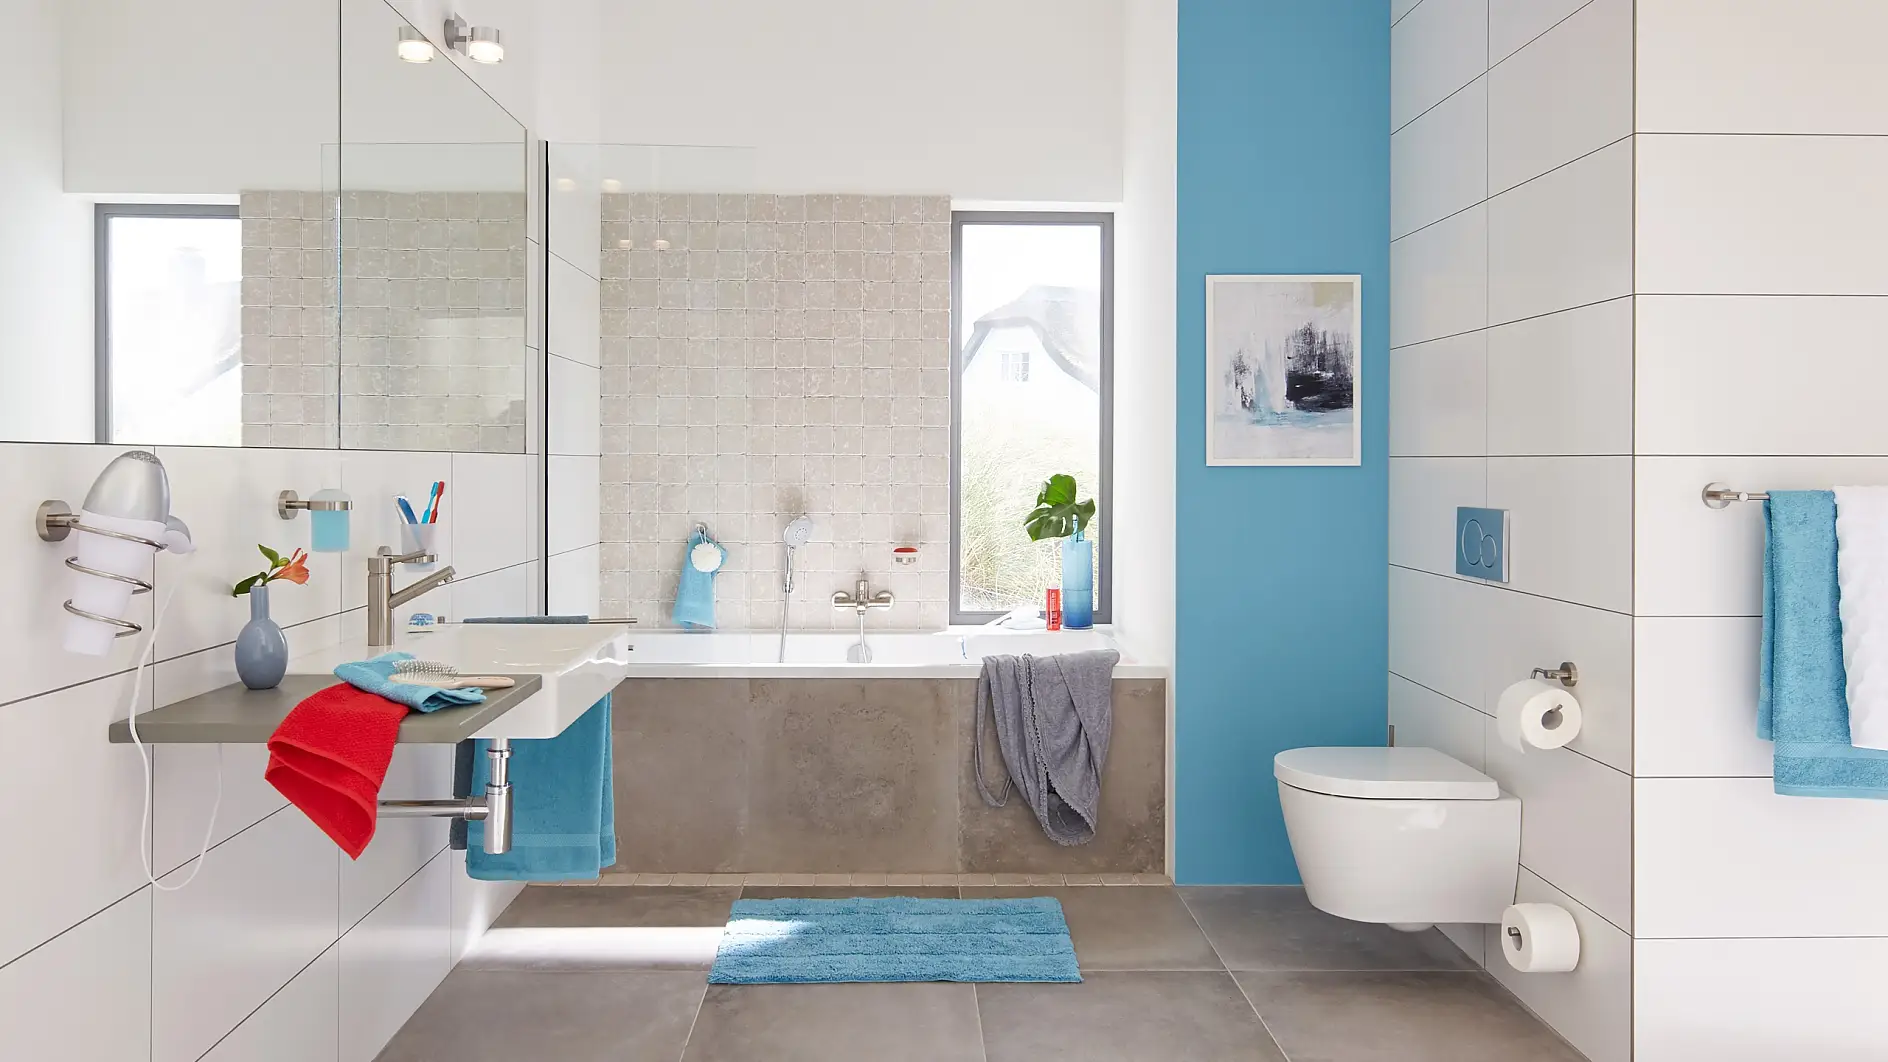 Modern design that provides space and structure in your bathroom. Nowoczesny design, który zapewnia odpowiednie zagospodarowanie przestrzeni w łazience.